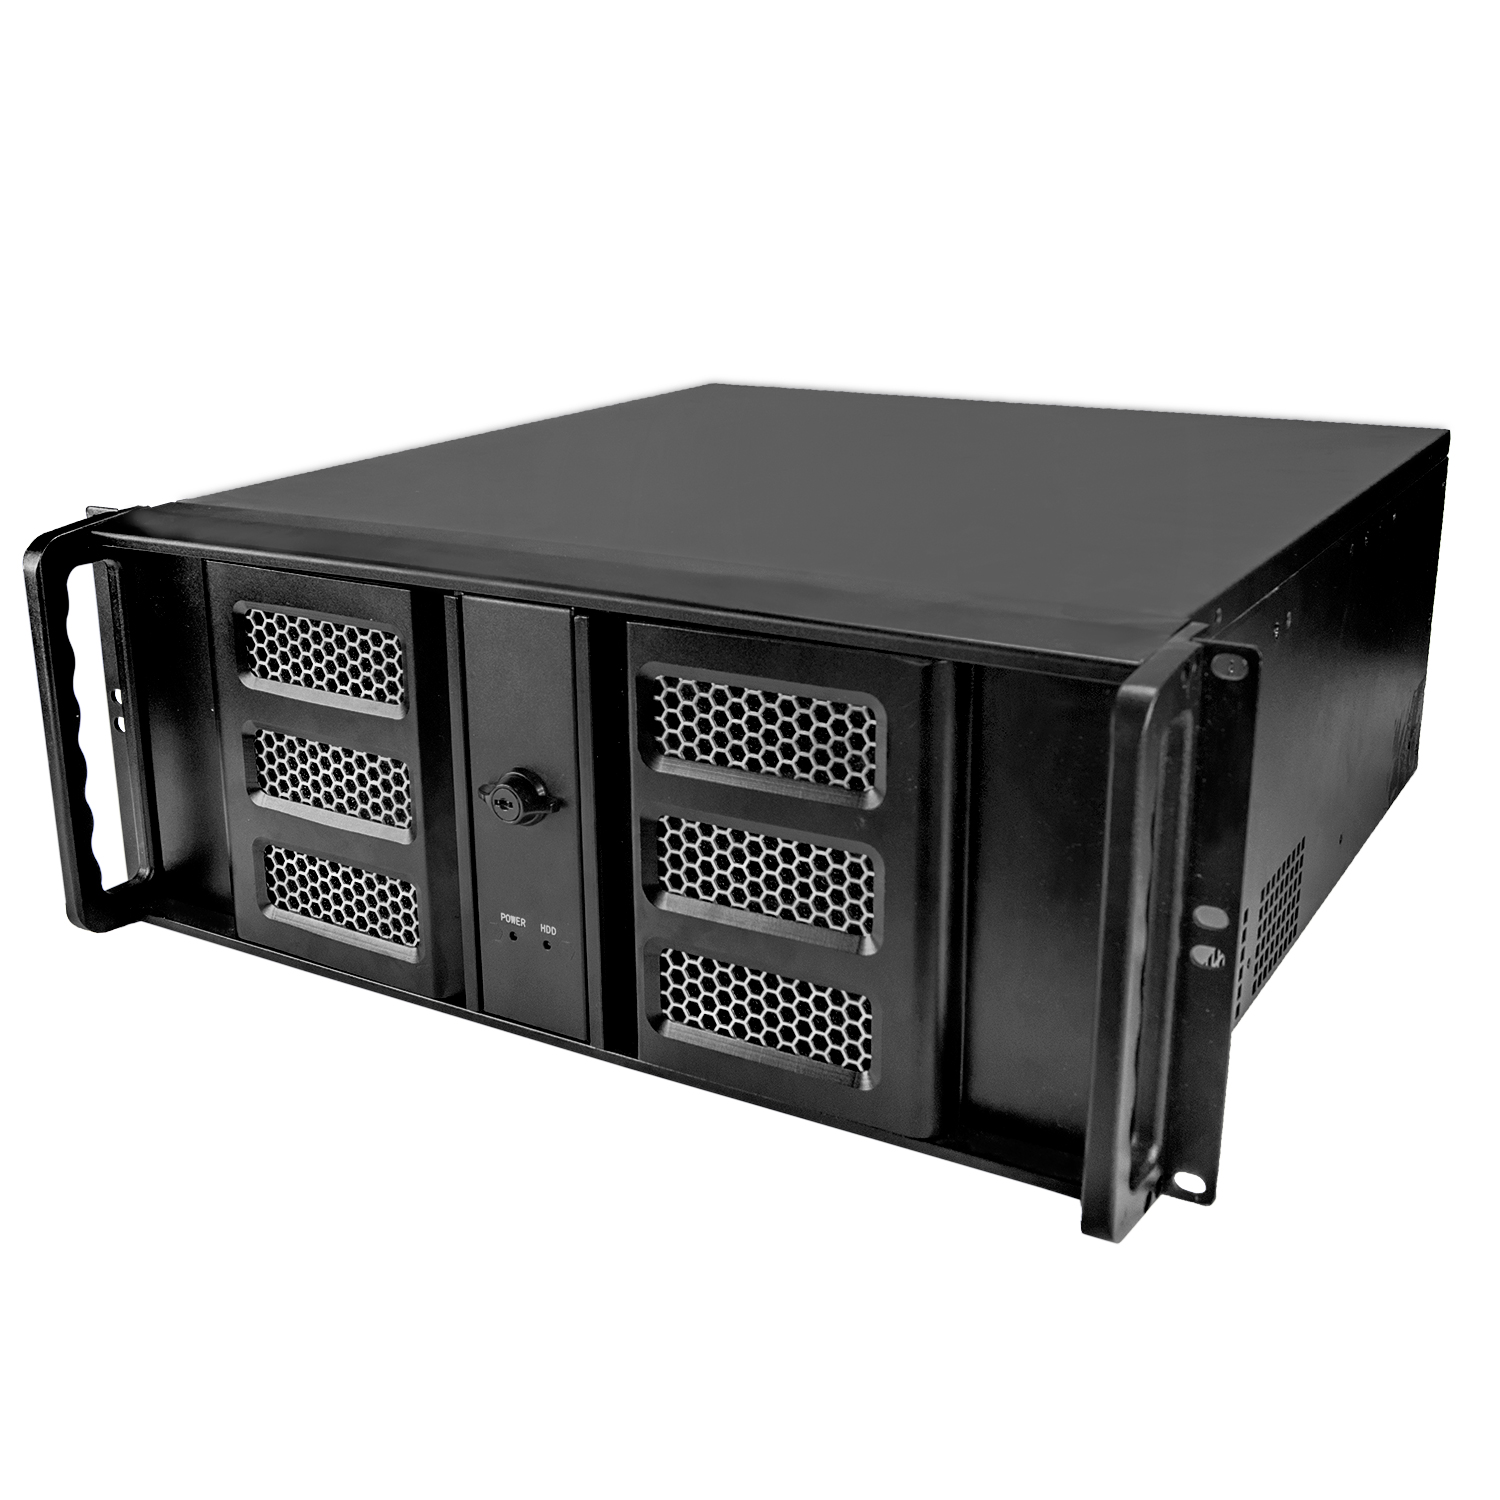 Серверный корпус 4U NR-N436D 500Вт (ATX 10.2x12, 3x5.25ext, 1x3.5ext, 6x3.5int,450мм)черный,NegoRack